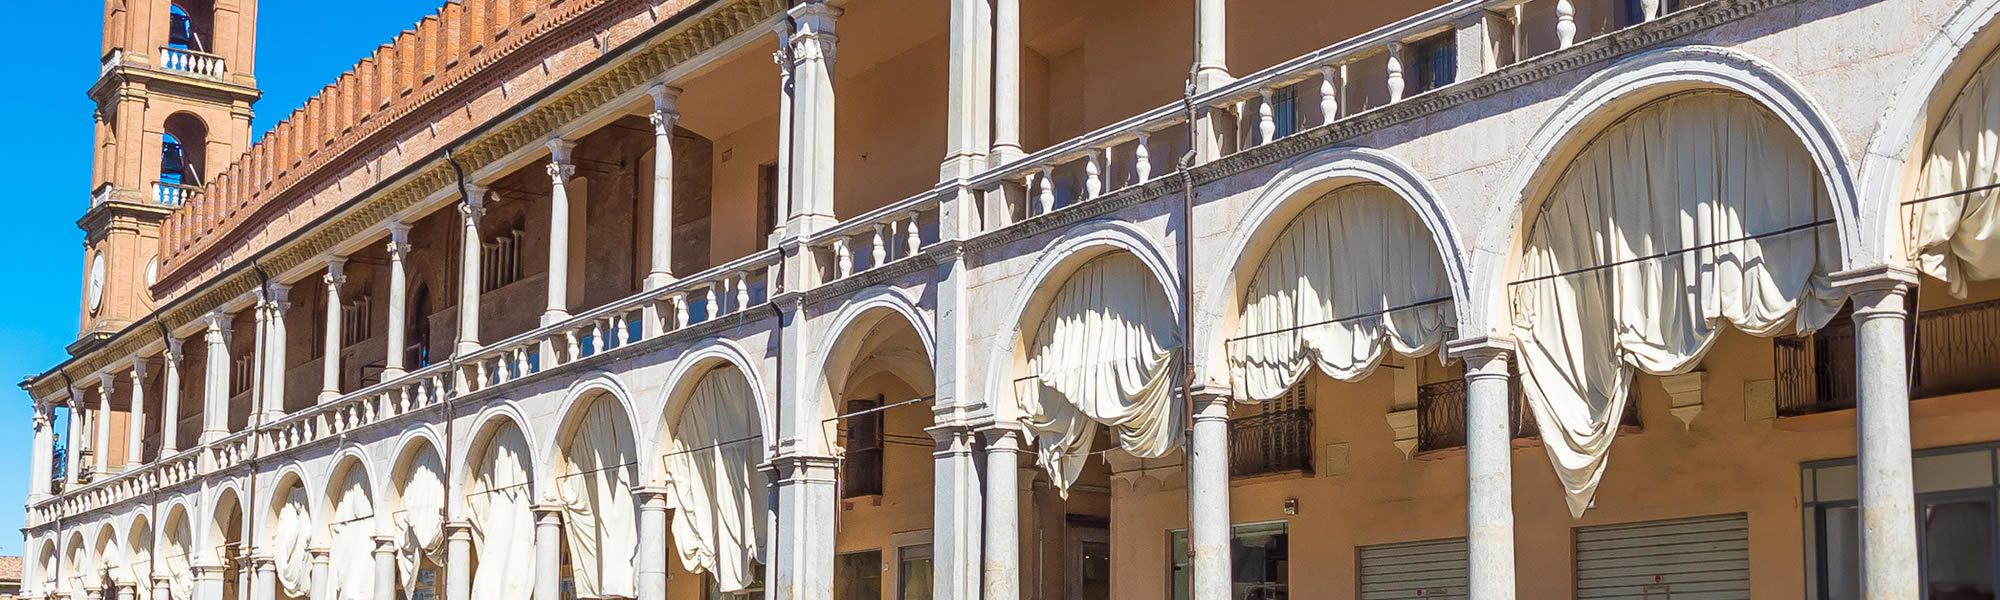 Le bellezze di Faenza visitabili da tutto il mondo grazie a Google Arts & Culture